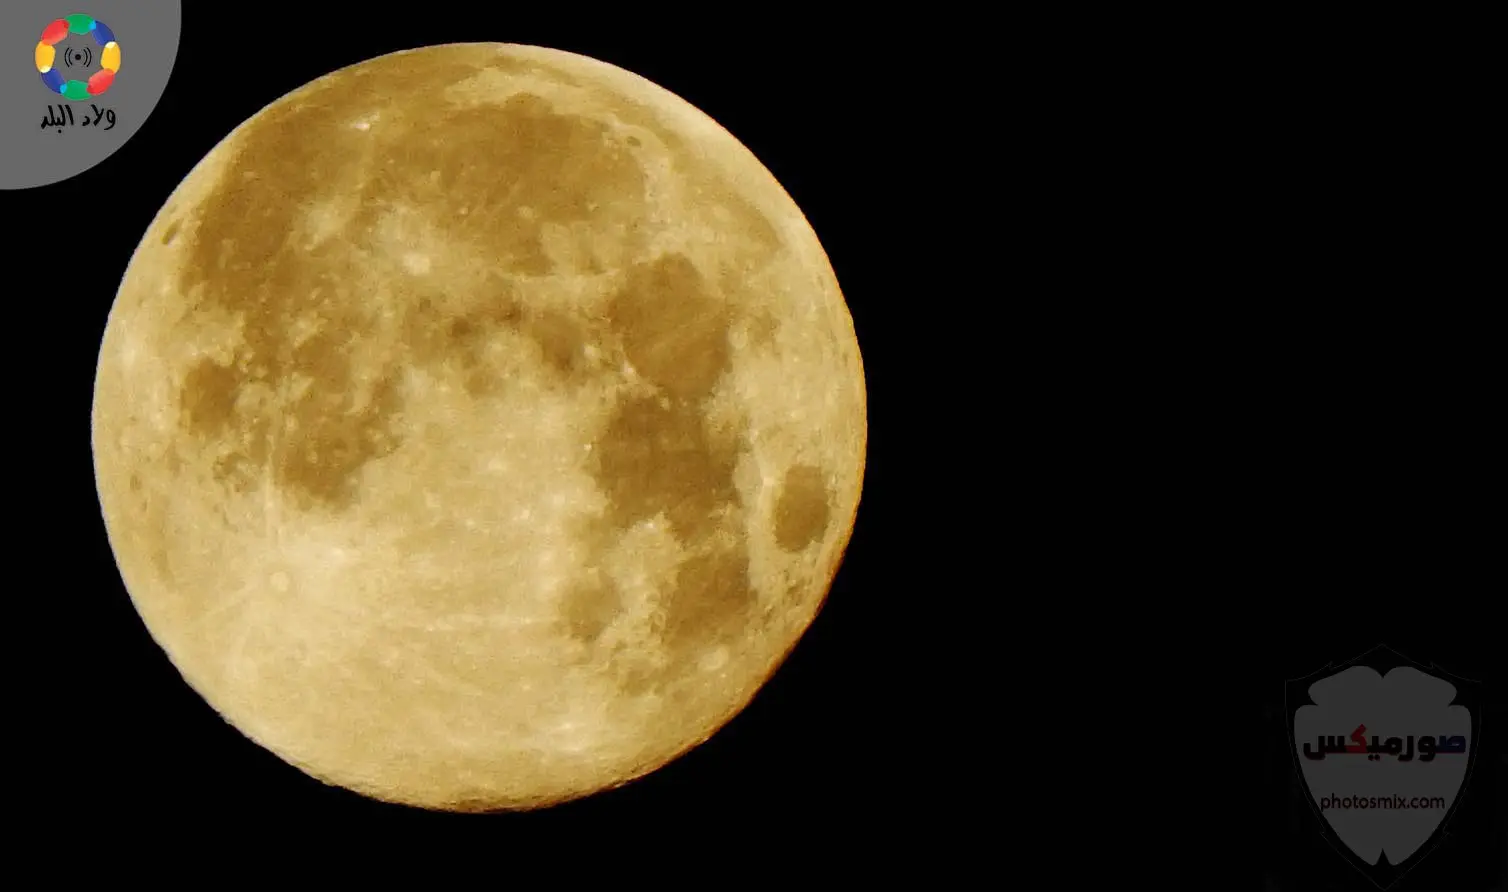 صور القمر العملاق رمزيات عن القمر العملاق صور قمر وسط النجوم 3